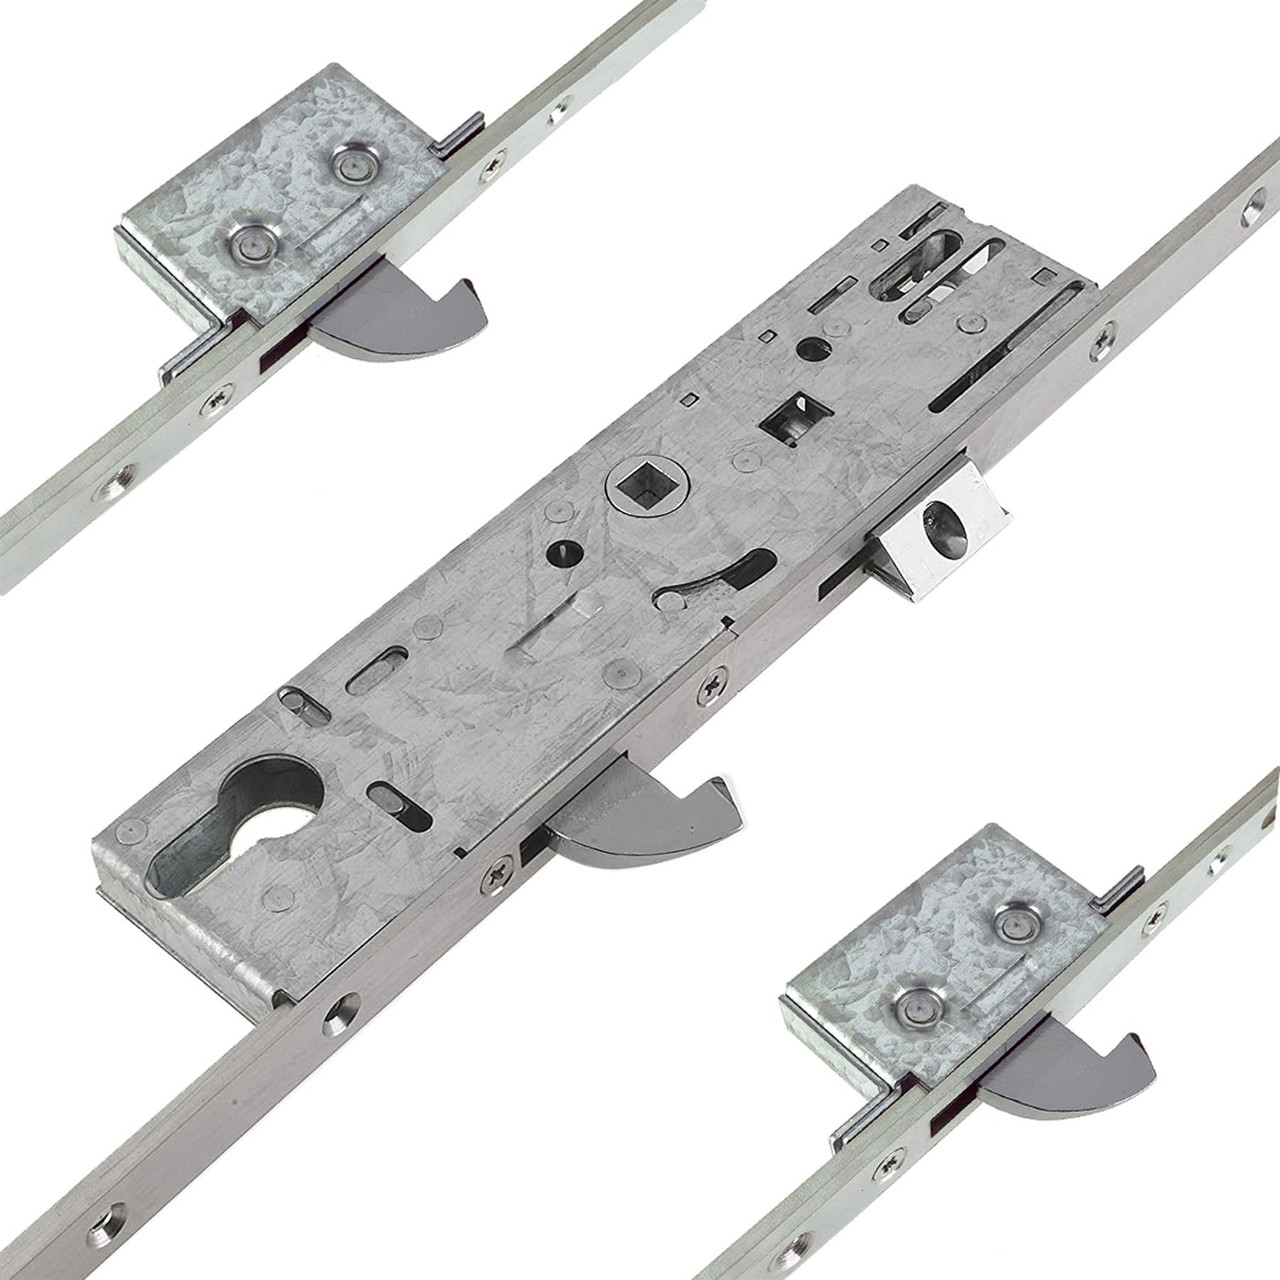 Replacement Door Lock Kit - Euro Profile 2 Hook 2 Roller